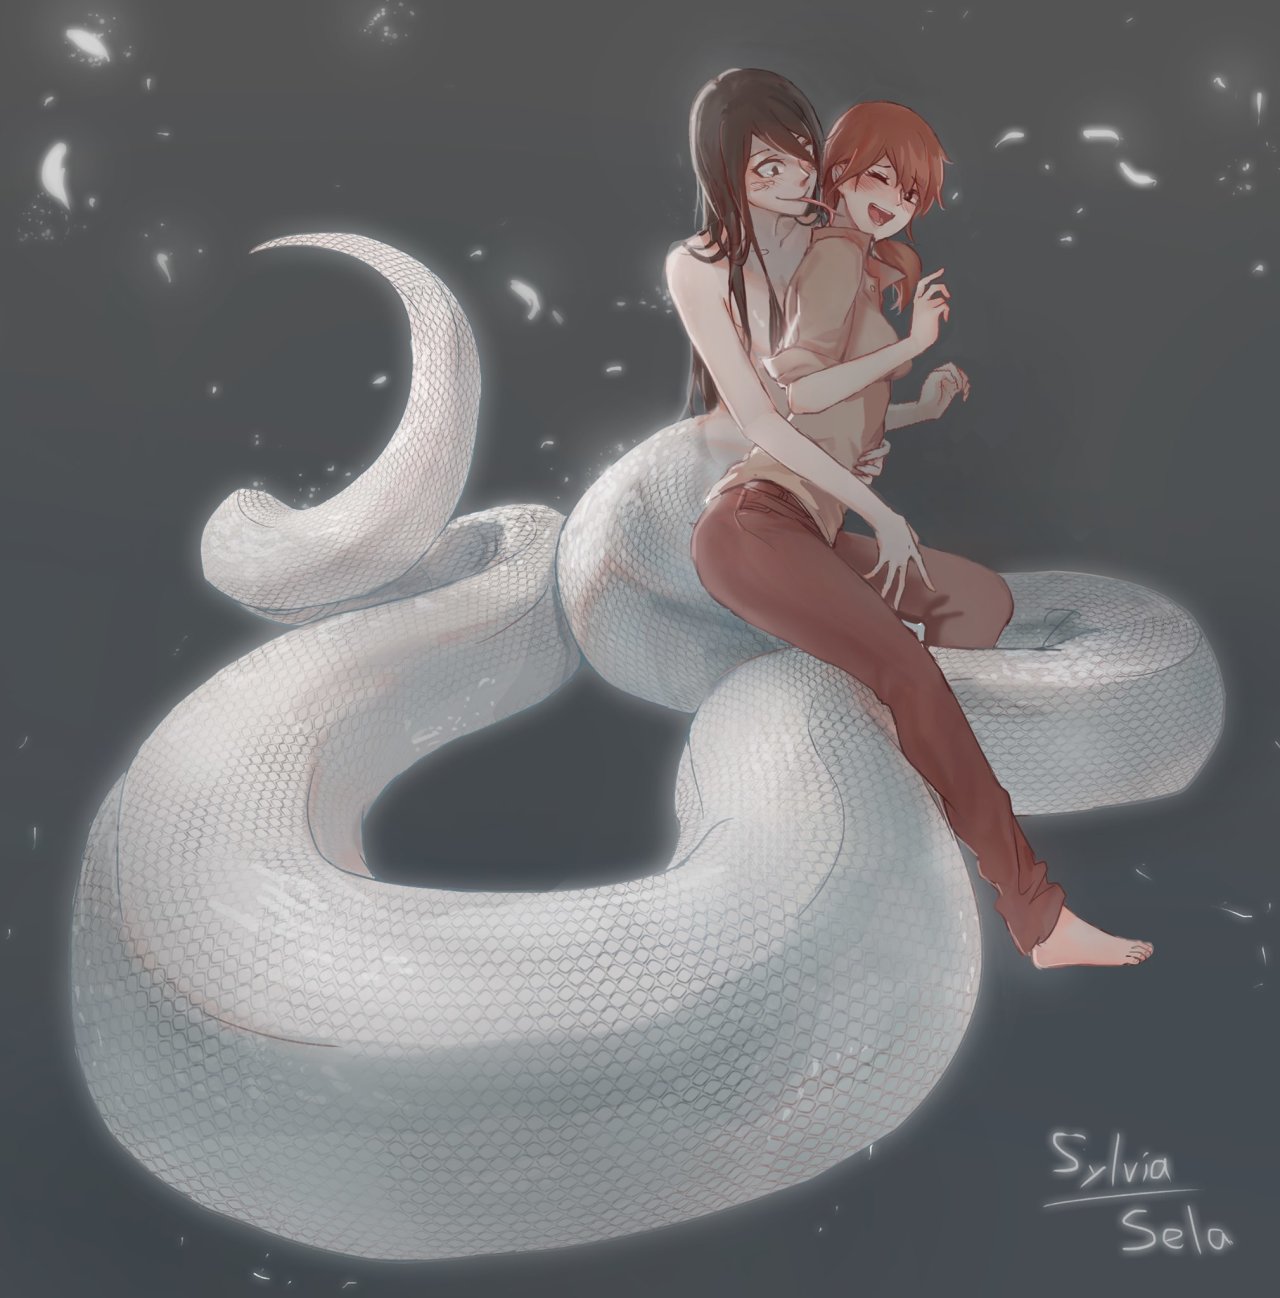 Como tener sexo con una chica serpiente + extras - 34